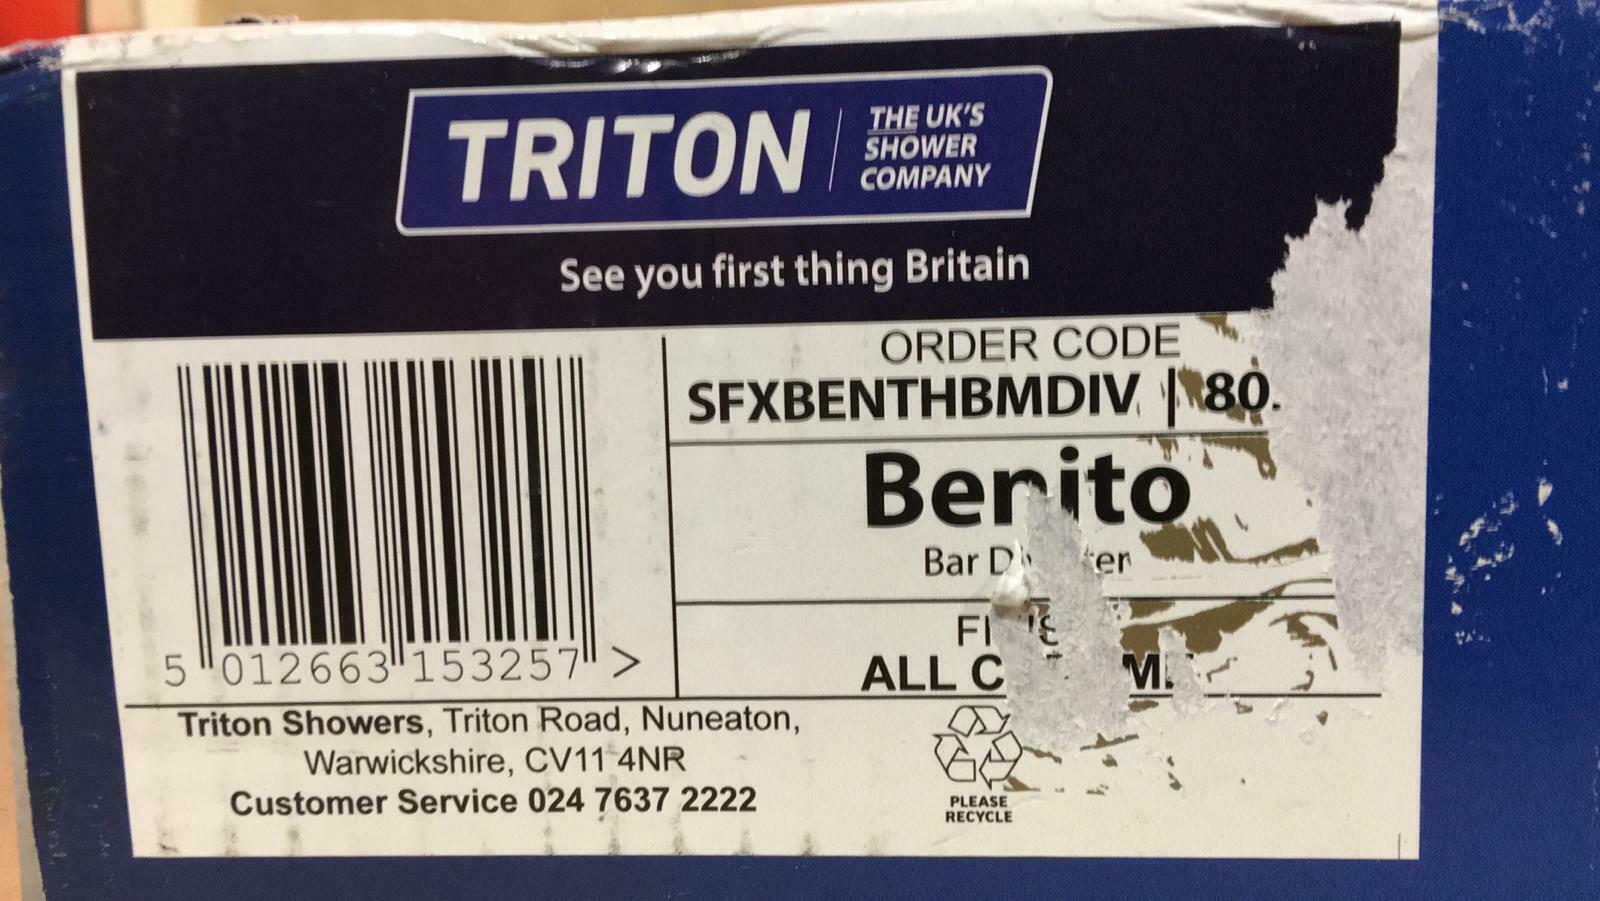 Triton Benito Chrome effect Thermostat temperature control Mixer Shower 3257